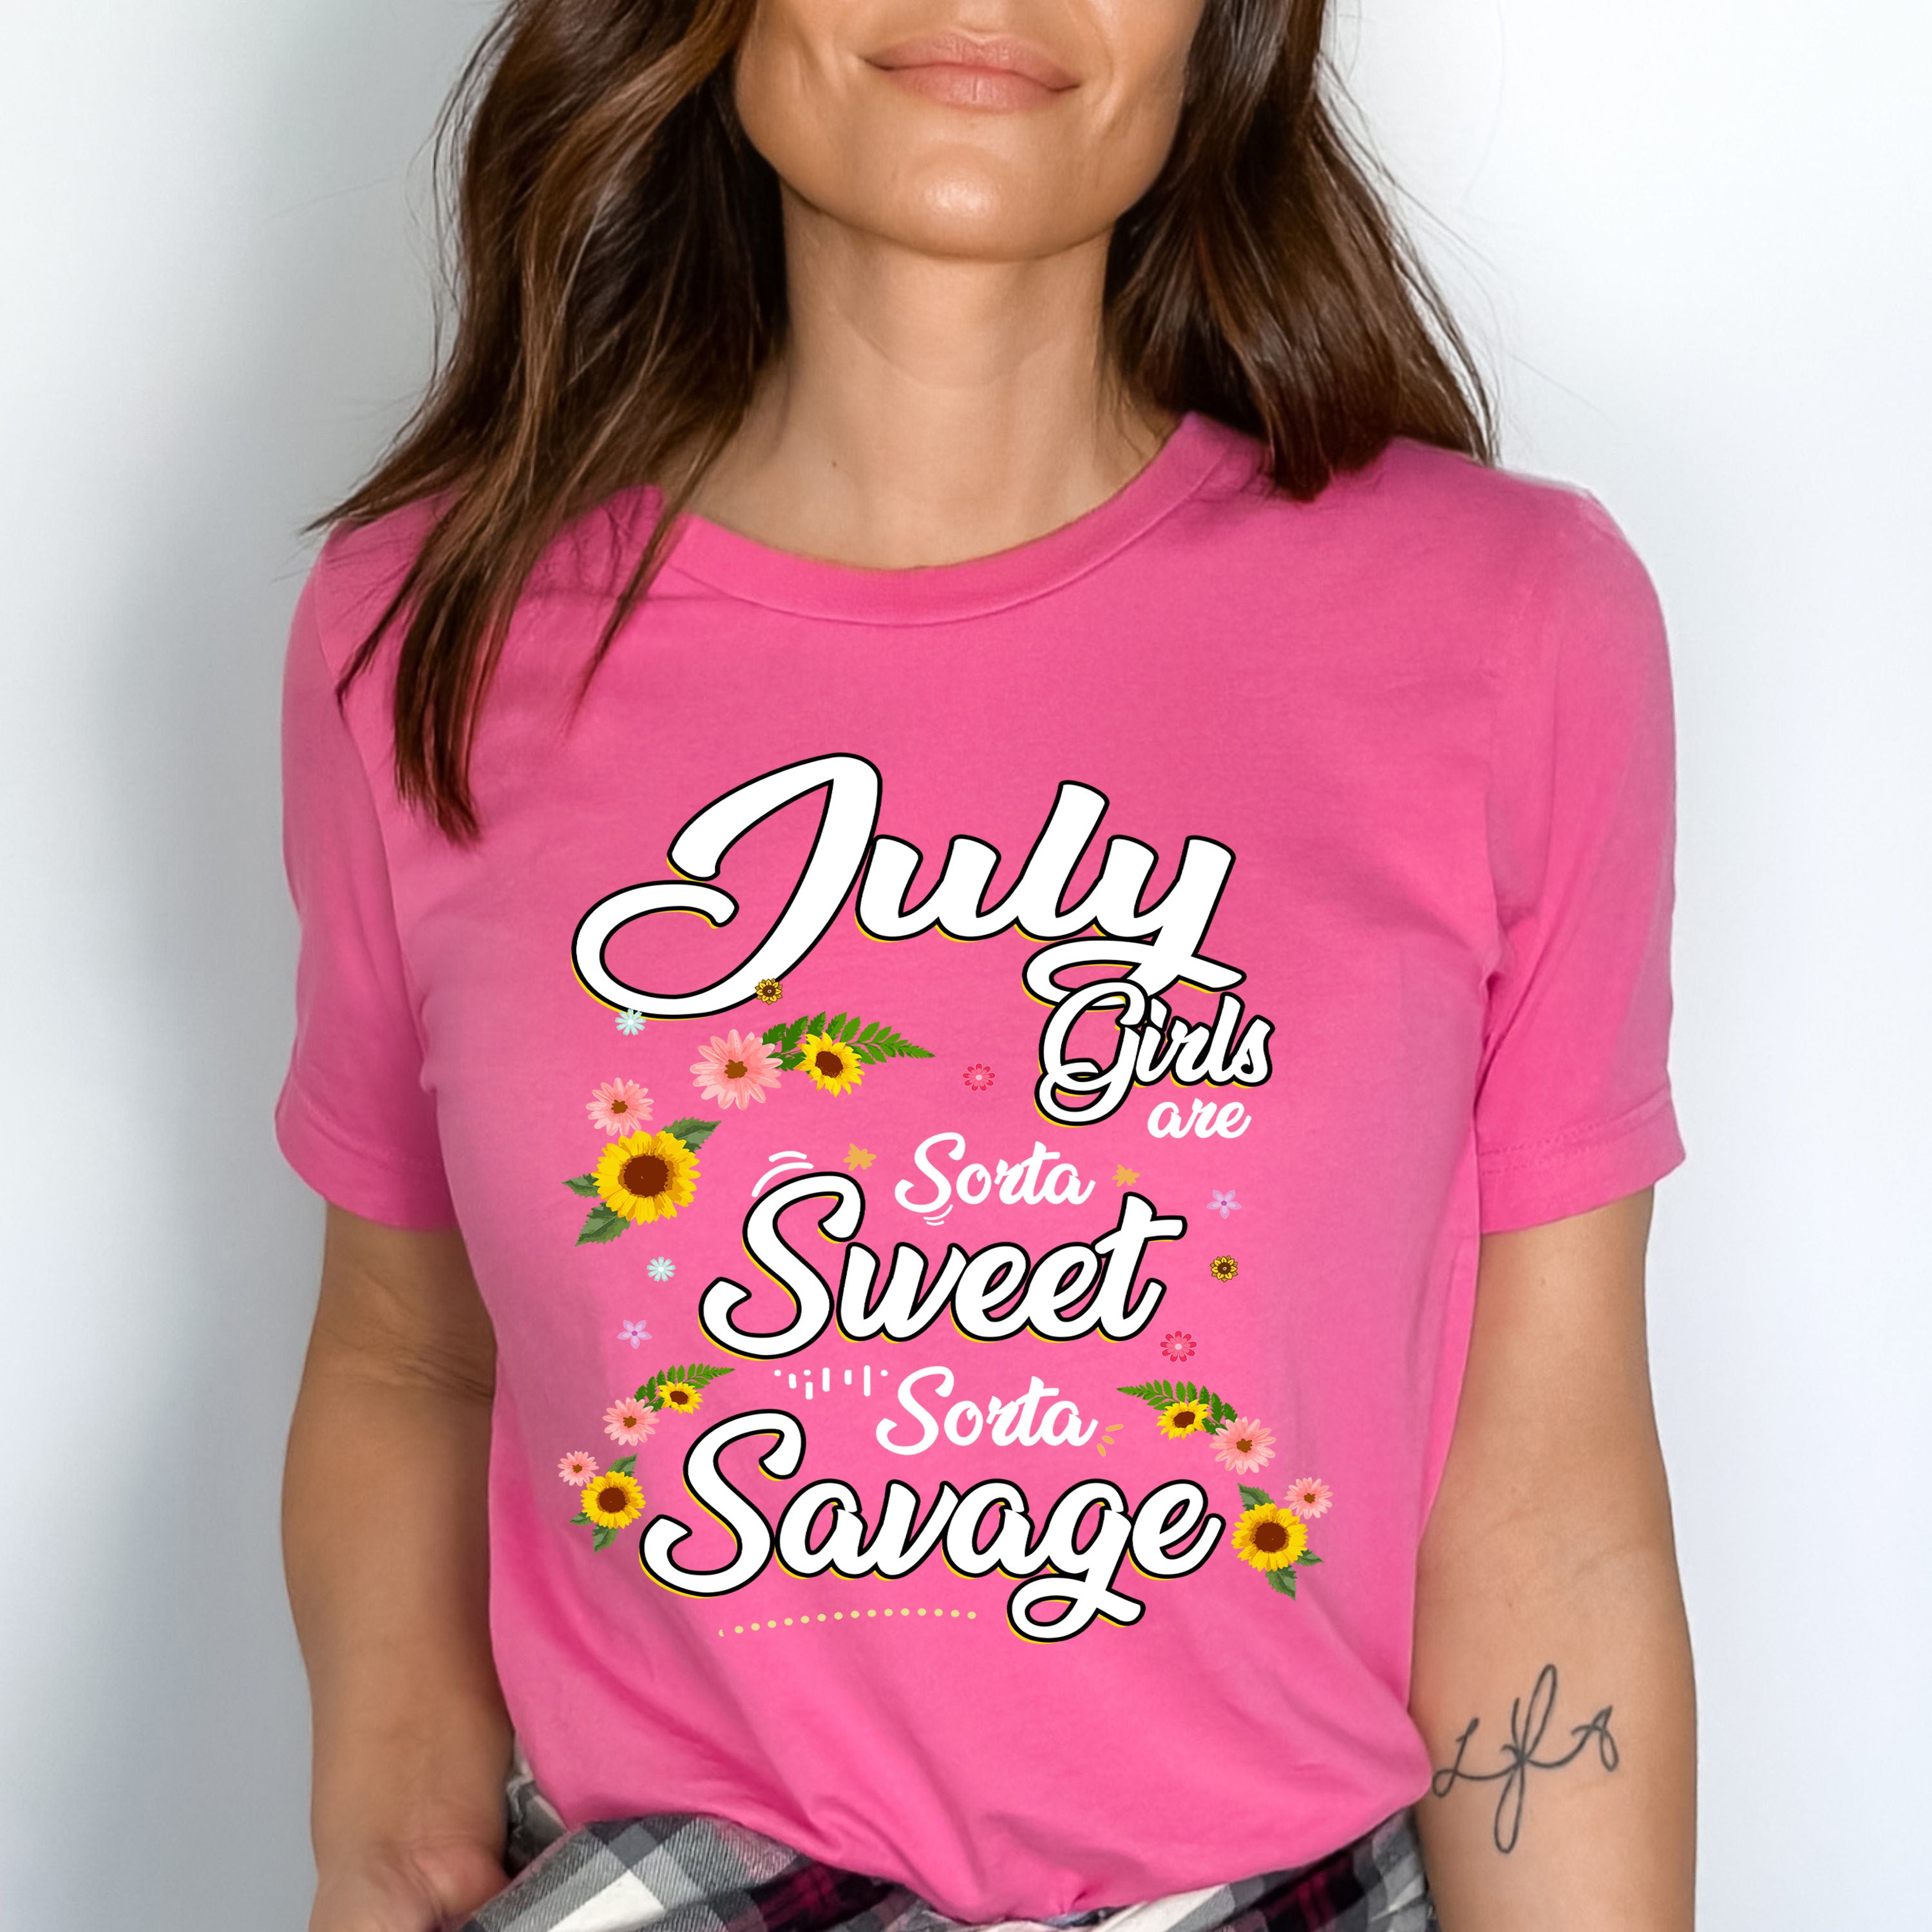 "July Girls Are Sorta Sweet Sorta Savage"